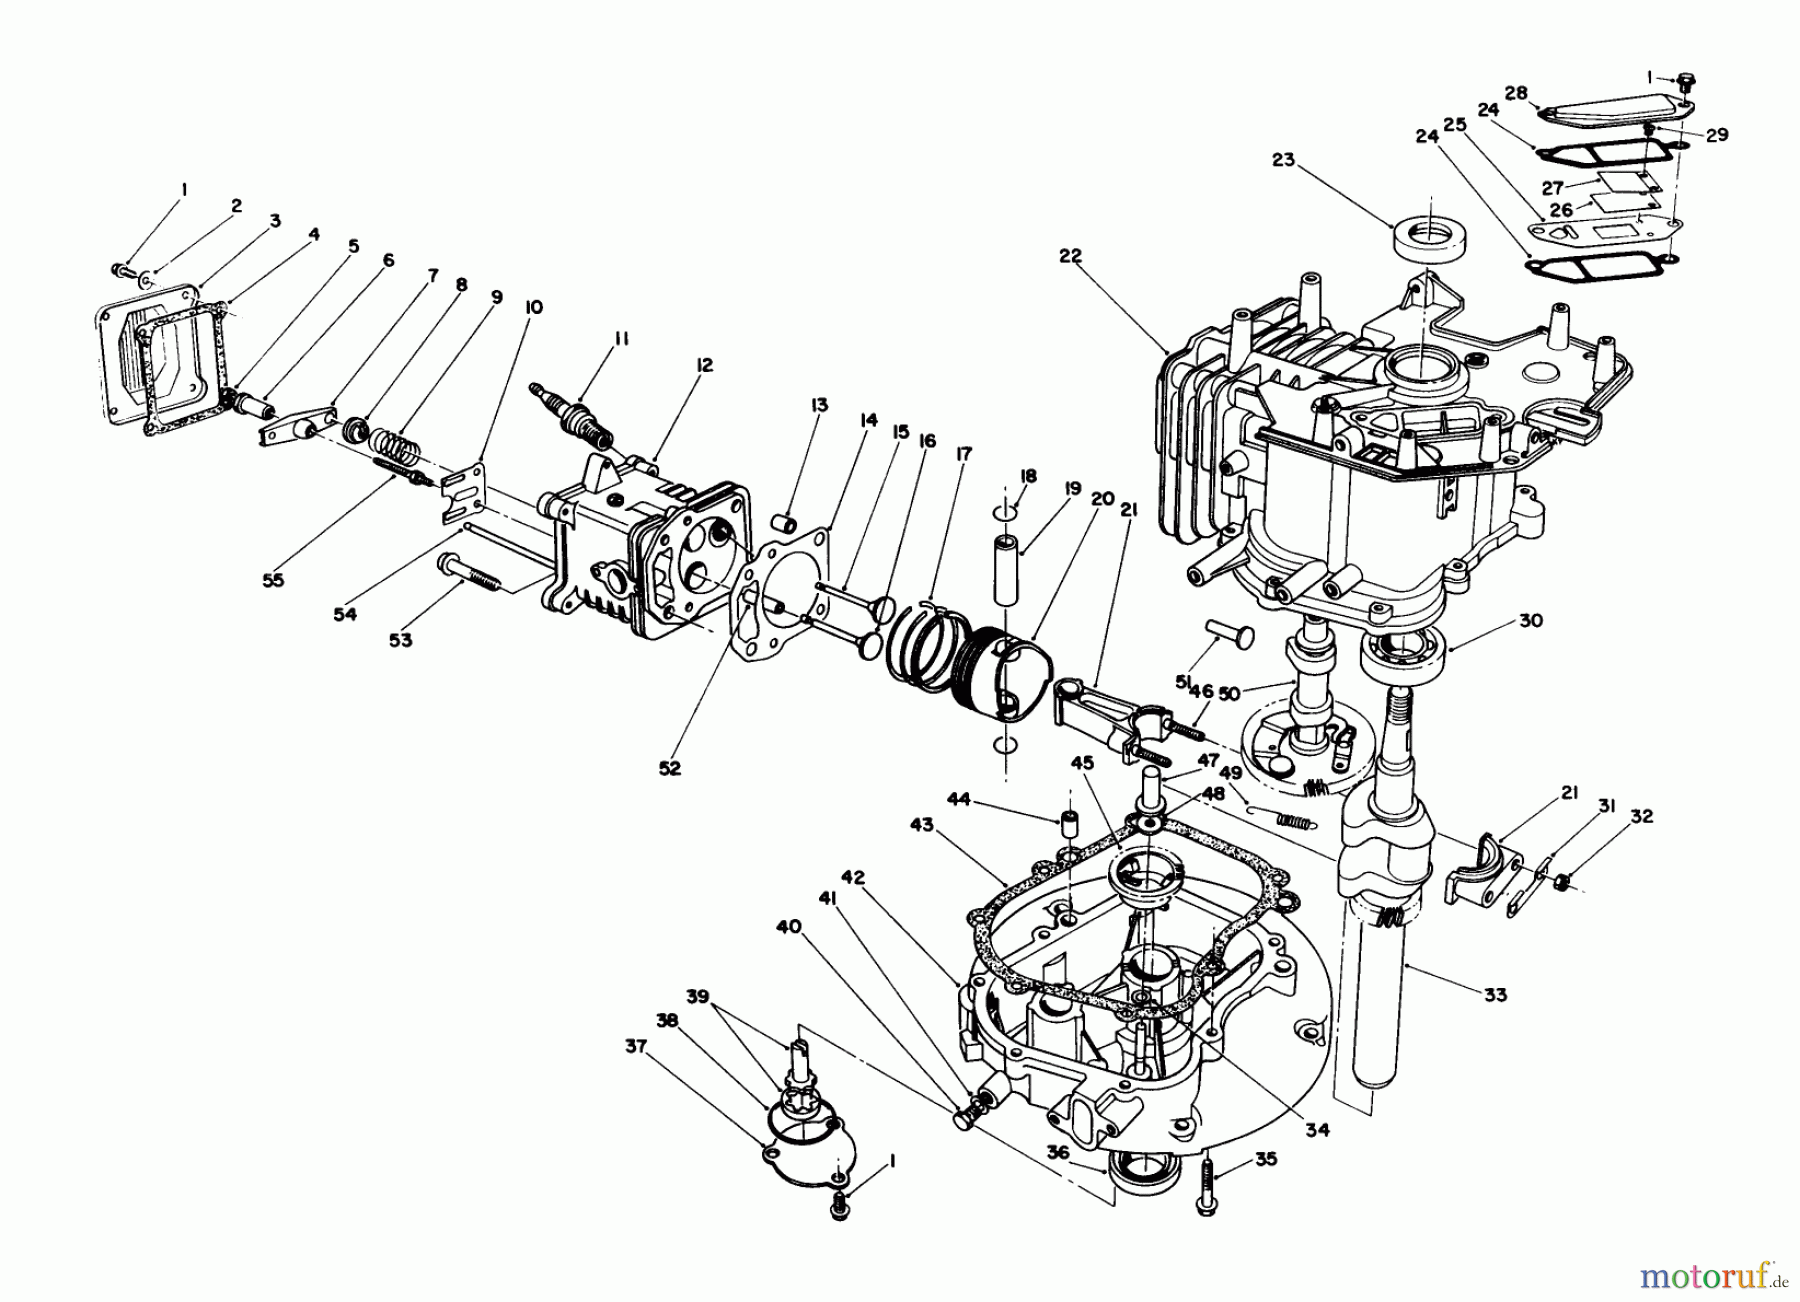  Toro Neu Mowers, Walk-Behind Seite 1 20626C - Toro Lawnmower, 1986 (6000001-6999999) ENGINE ASSEMBLY #2